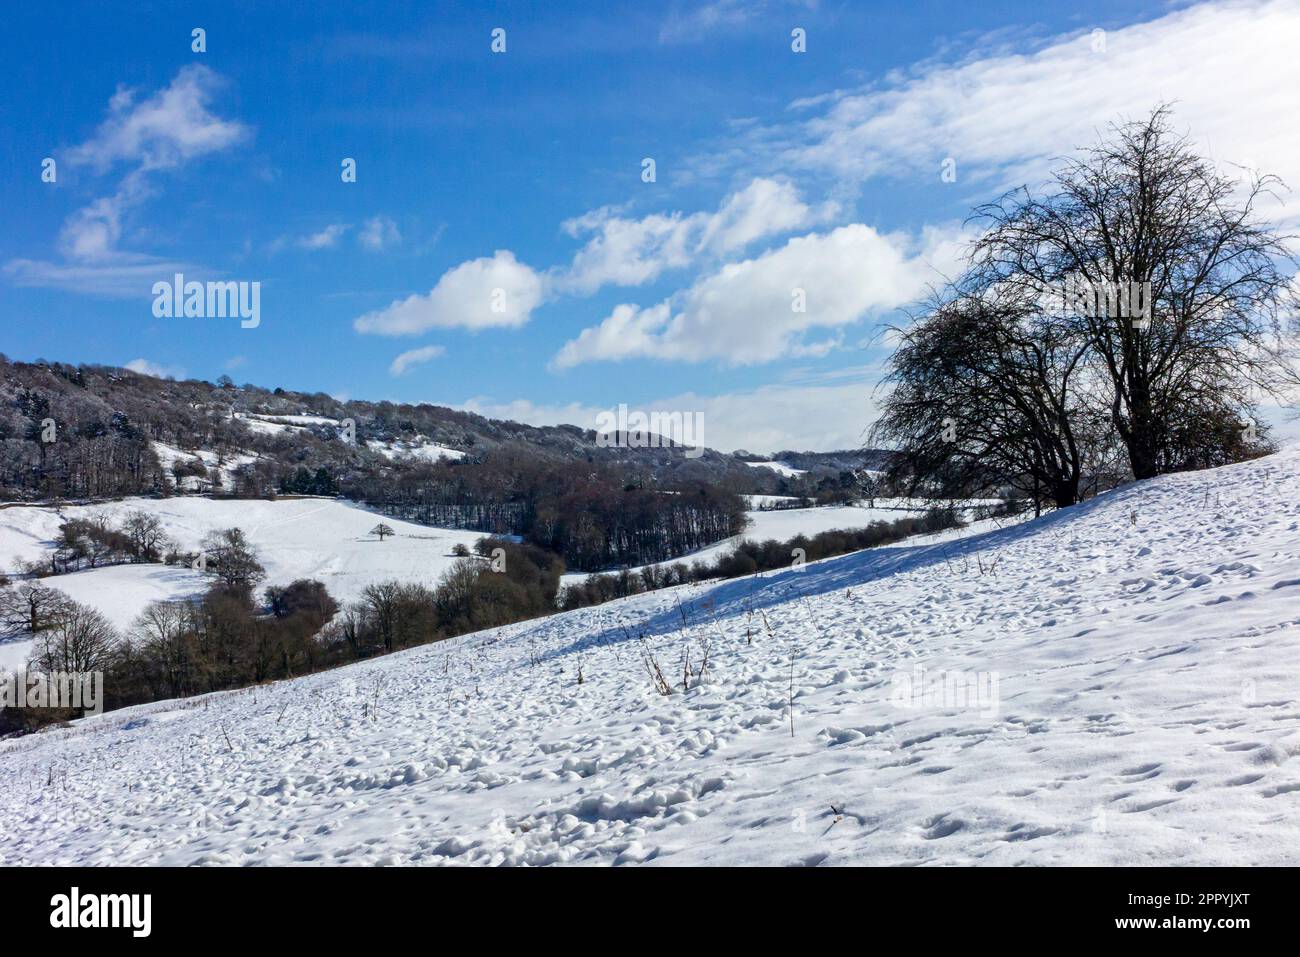 Paysage couvert de neige avec arbres à Matlock Bath dans le Derbyshire Peak District Angleterre Royaume-Uni Banque D'Images